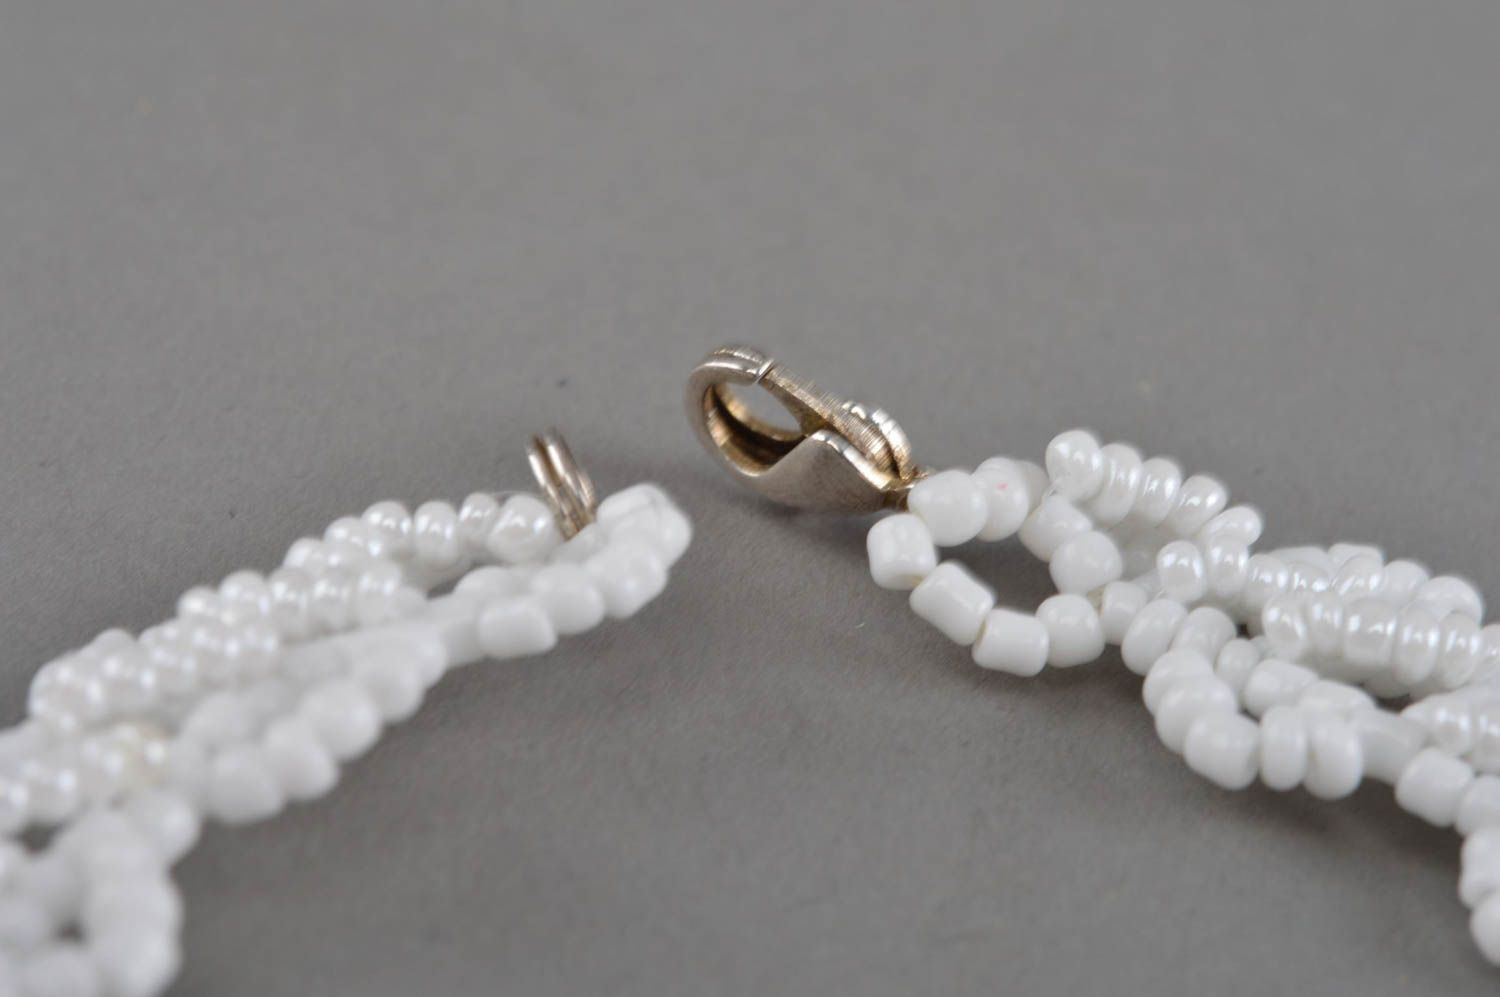 Ожерелье из бисера белое с бусинами цветами красивое необычное ручной работы фото 4